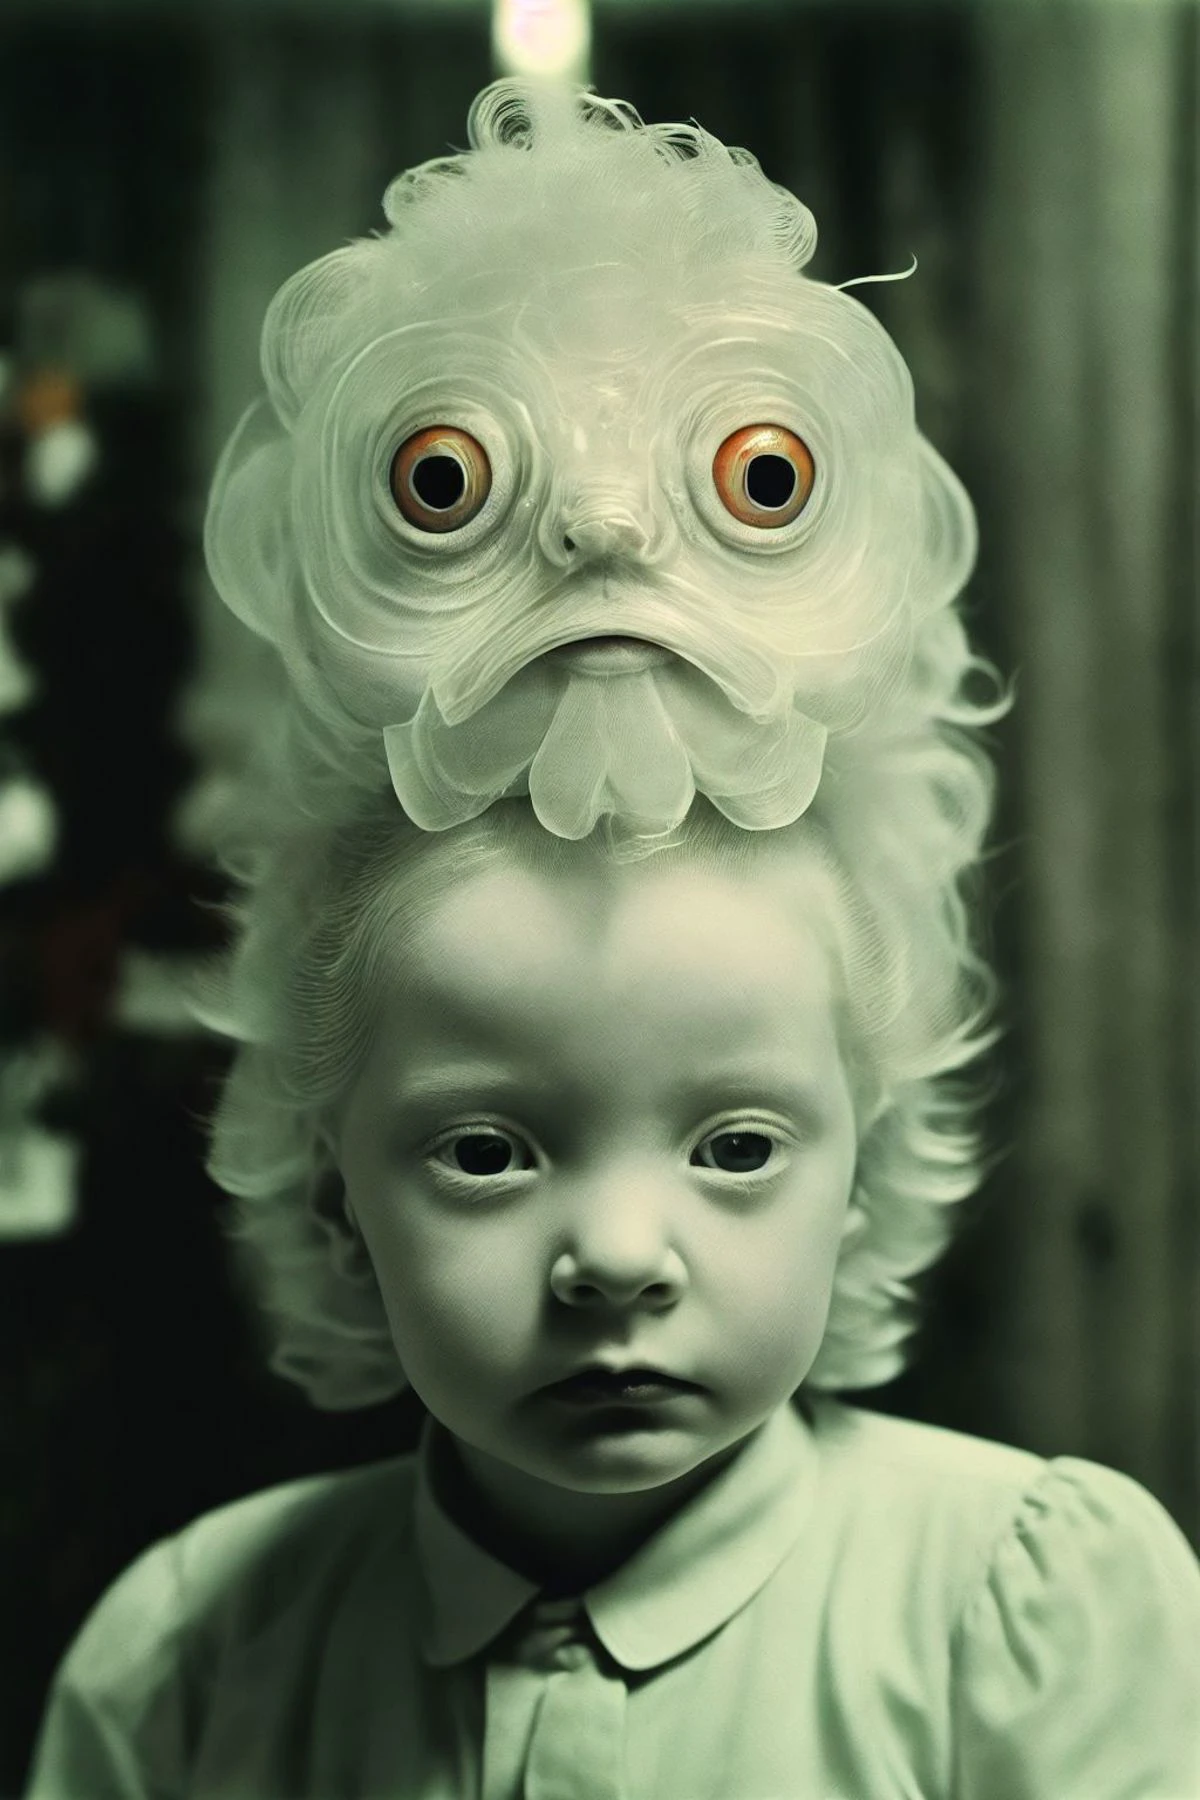 alBino disguised as a naked goldfish, Foto analógica dos anos 1930, Grande depressão, usa, Grão de filme, B&EM, colorido, temor, Ansiedade,Angústia